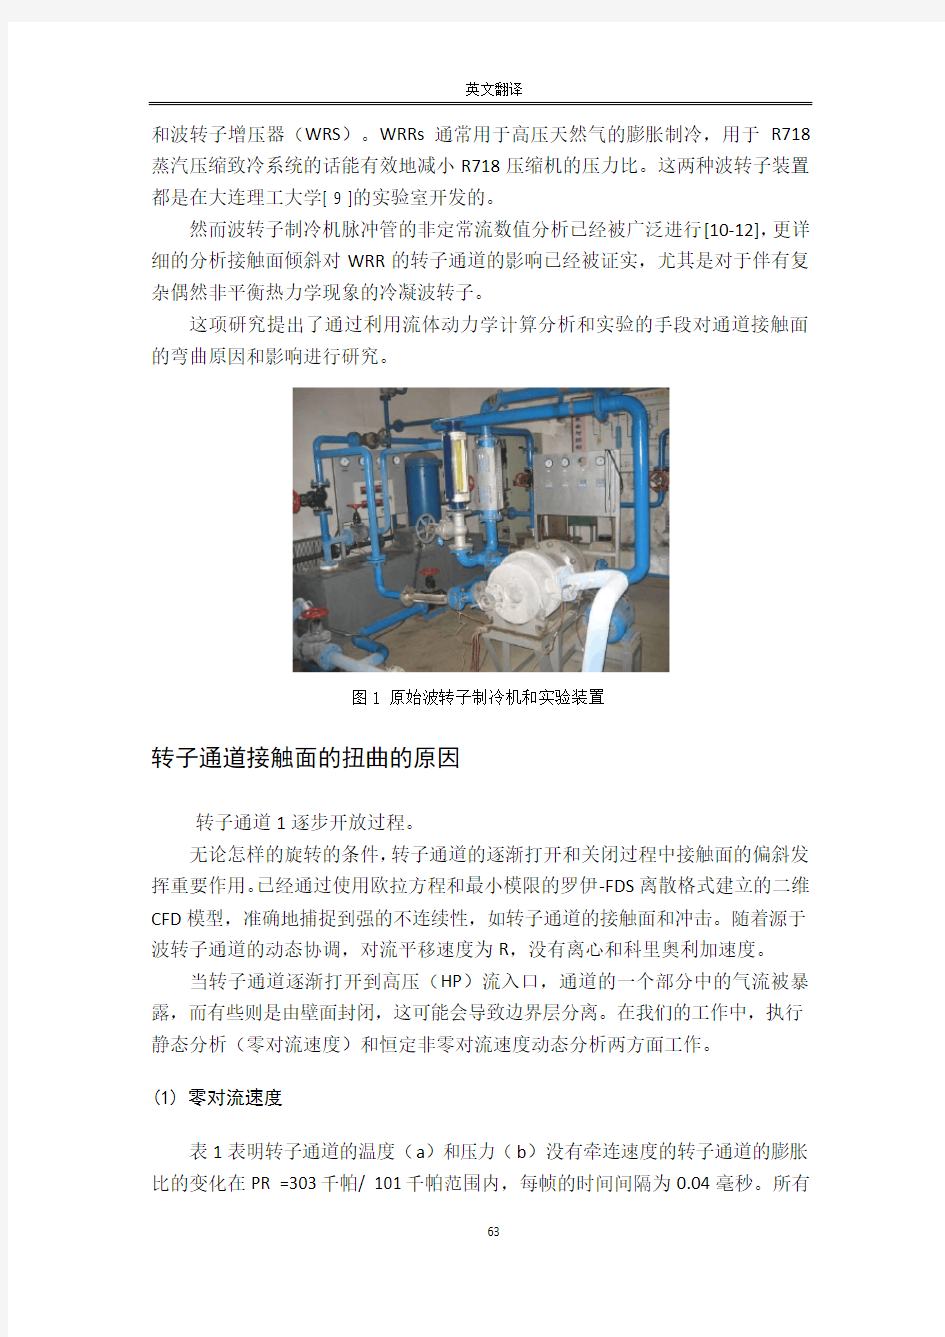 过程装备与控制工程毕业设计外文翻译(中文)